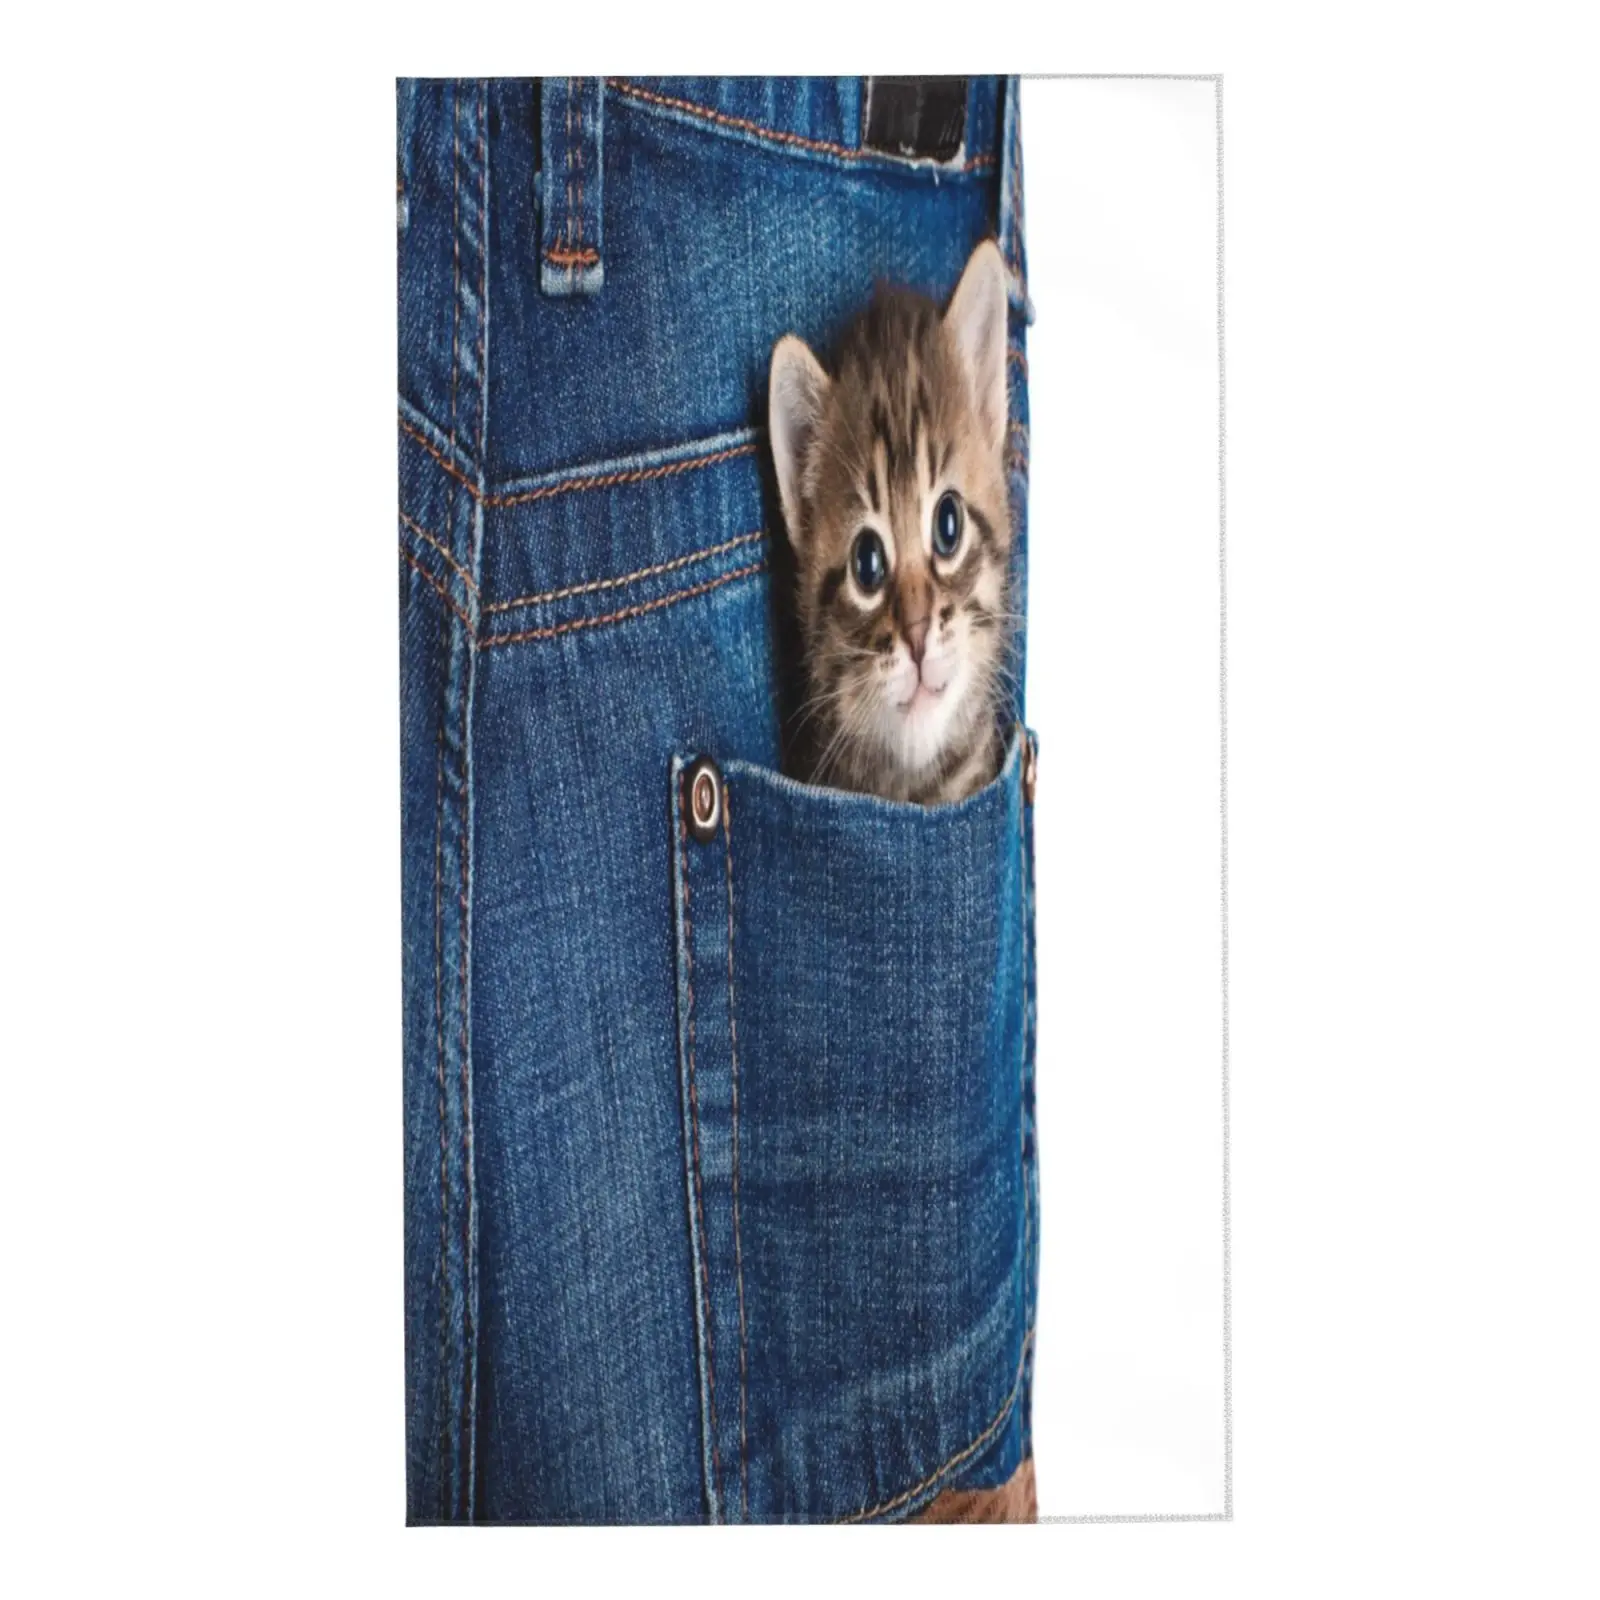 

Полотенце для лица Милая забавная кошка маленький котенок сидящий в кармане синие джинсы мягкое банное полотенце для отелей